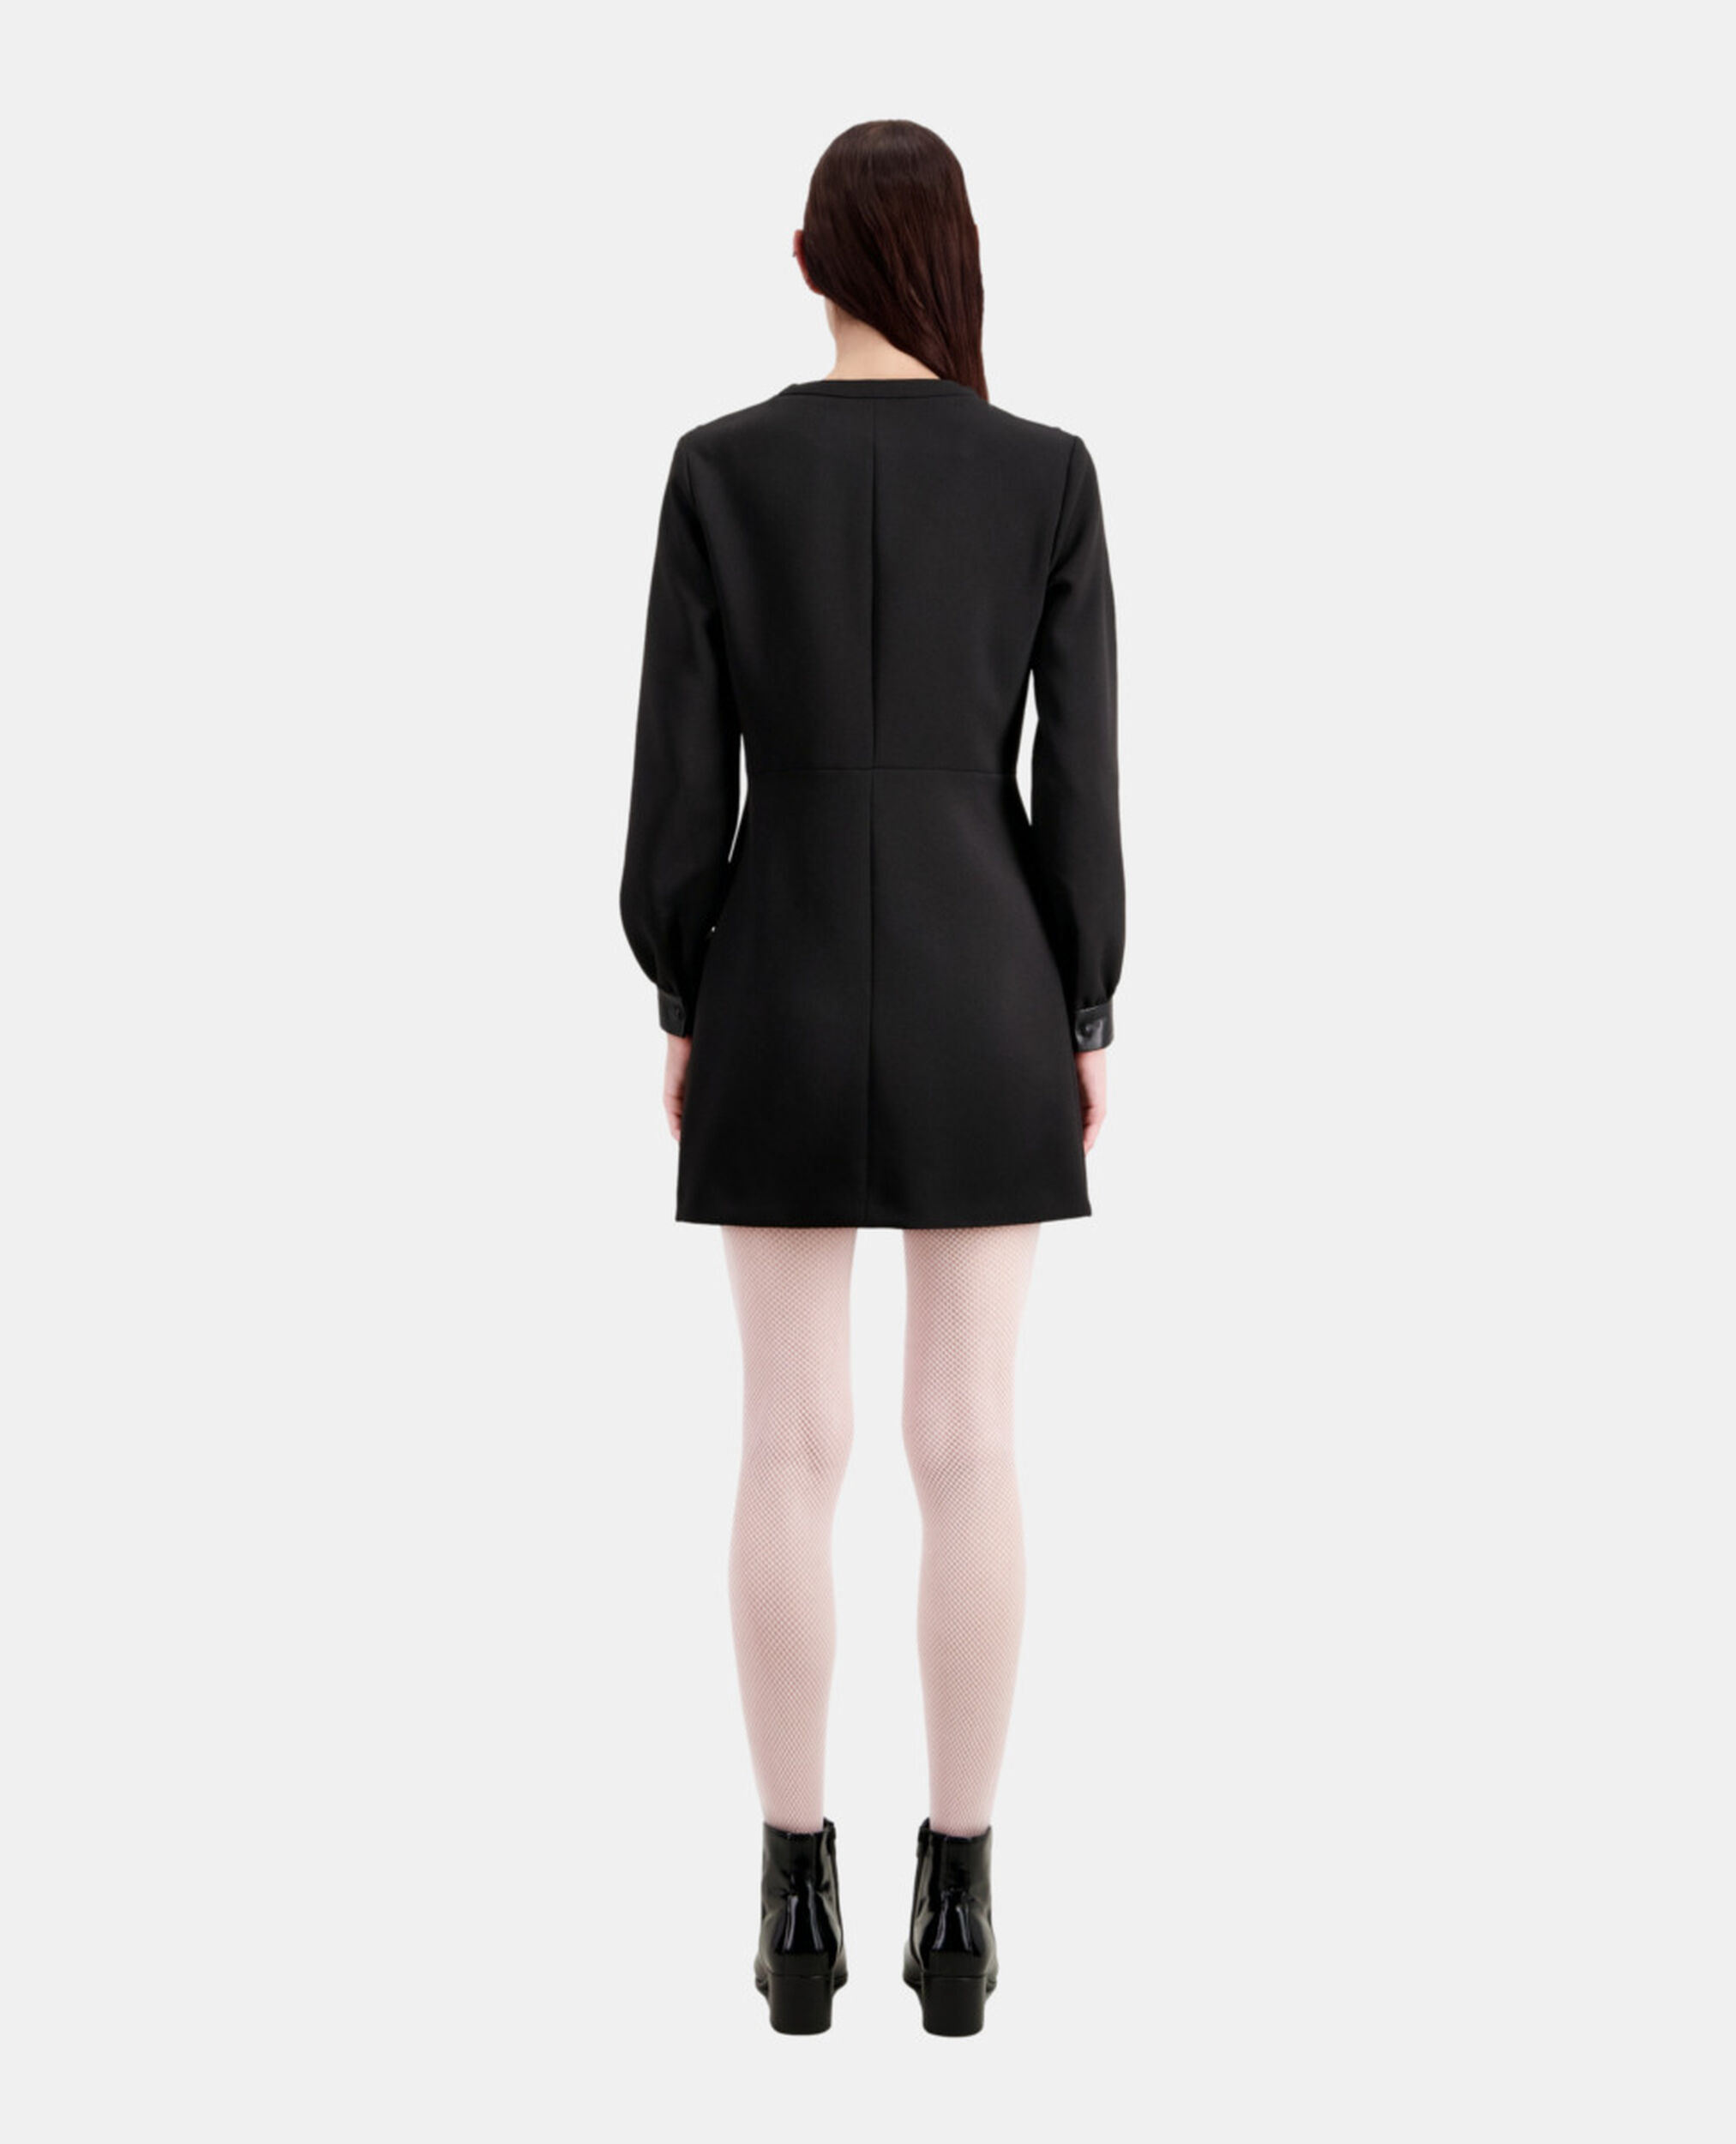 Short crepe dress with leather details, BLACK, hi-res image number null